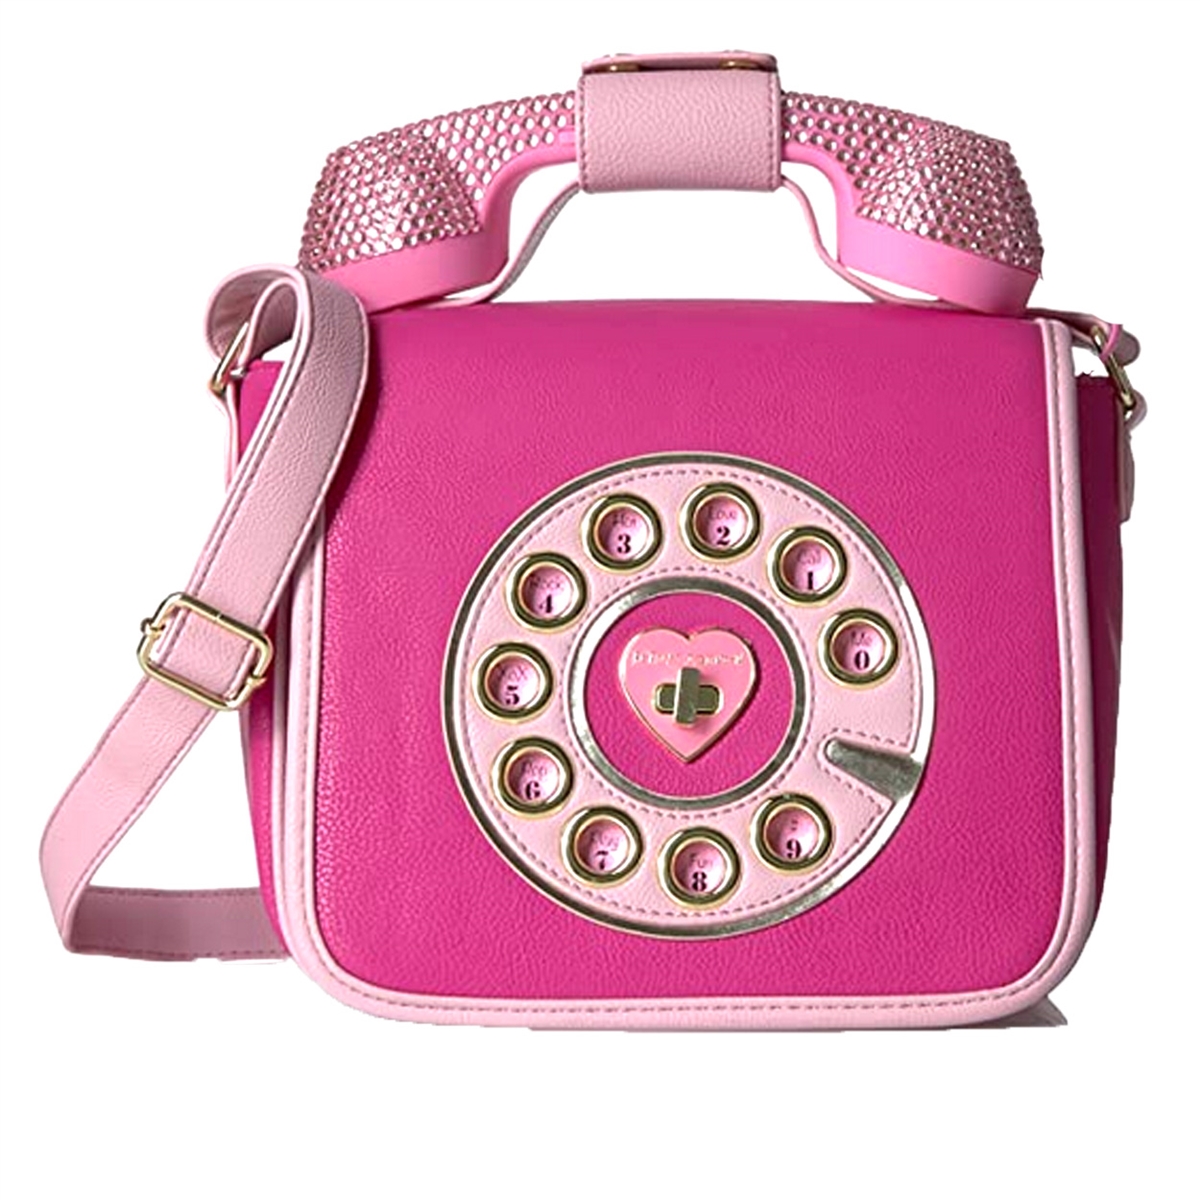 Designer Betsey Johnson Pink Telephone Purse Shoulder Bag | Grailed